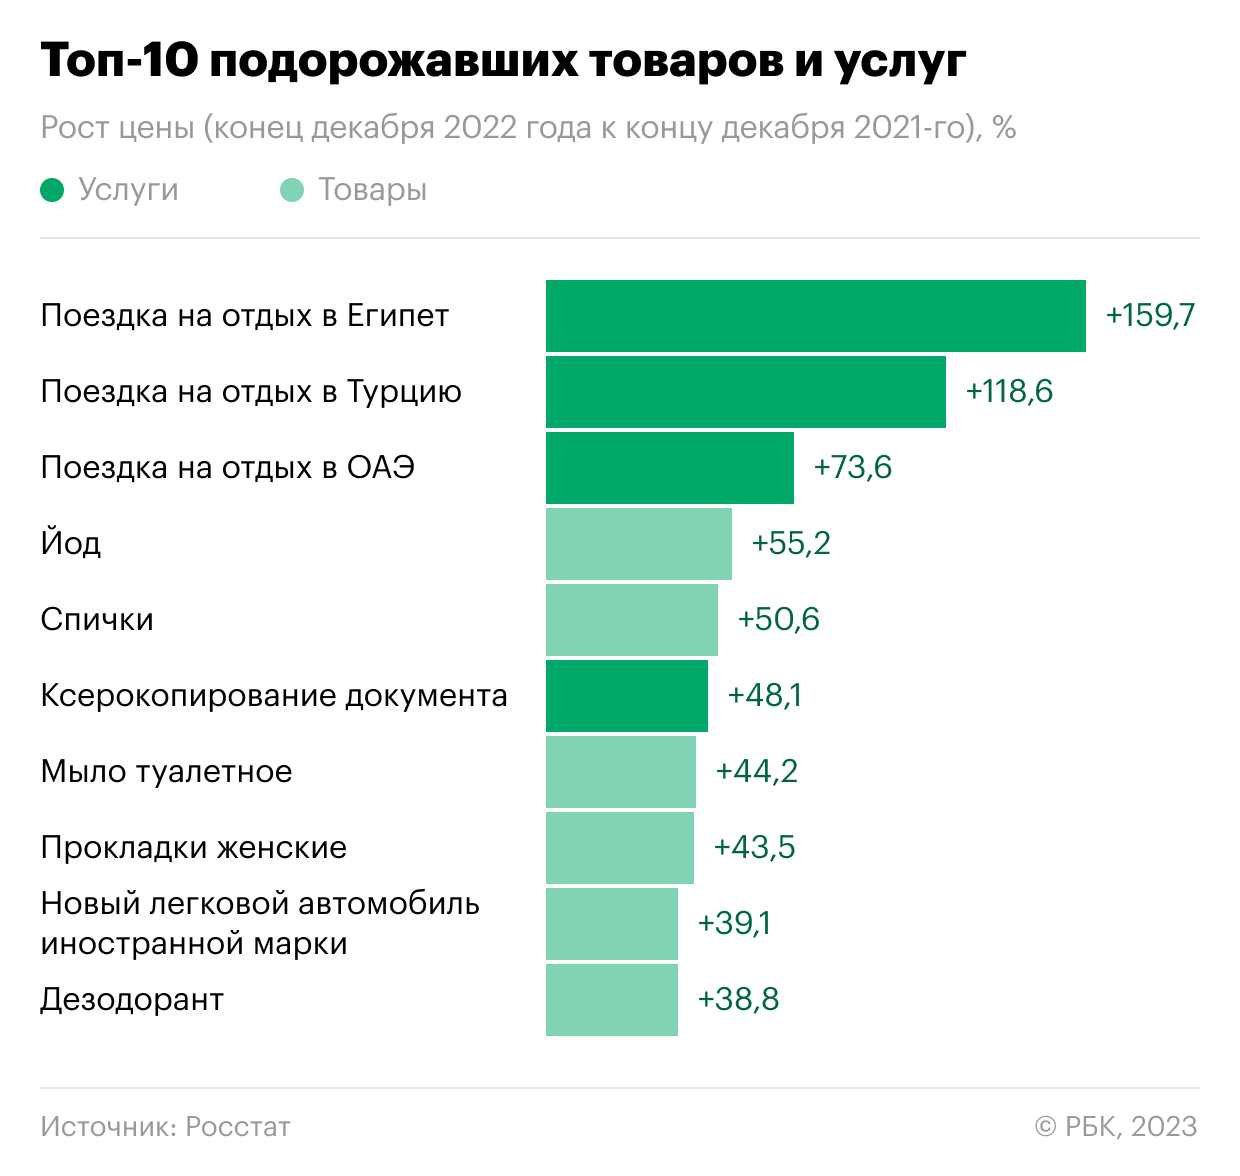 Топ-10 самых подорожавших и подешевевших товаров в России за 2022 год